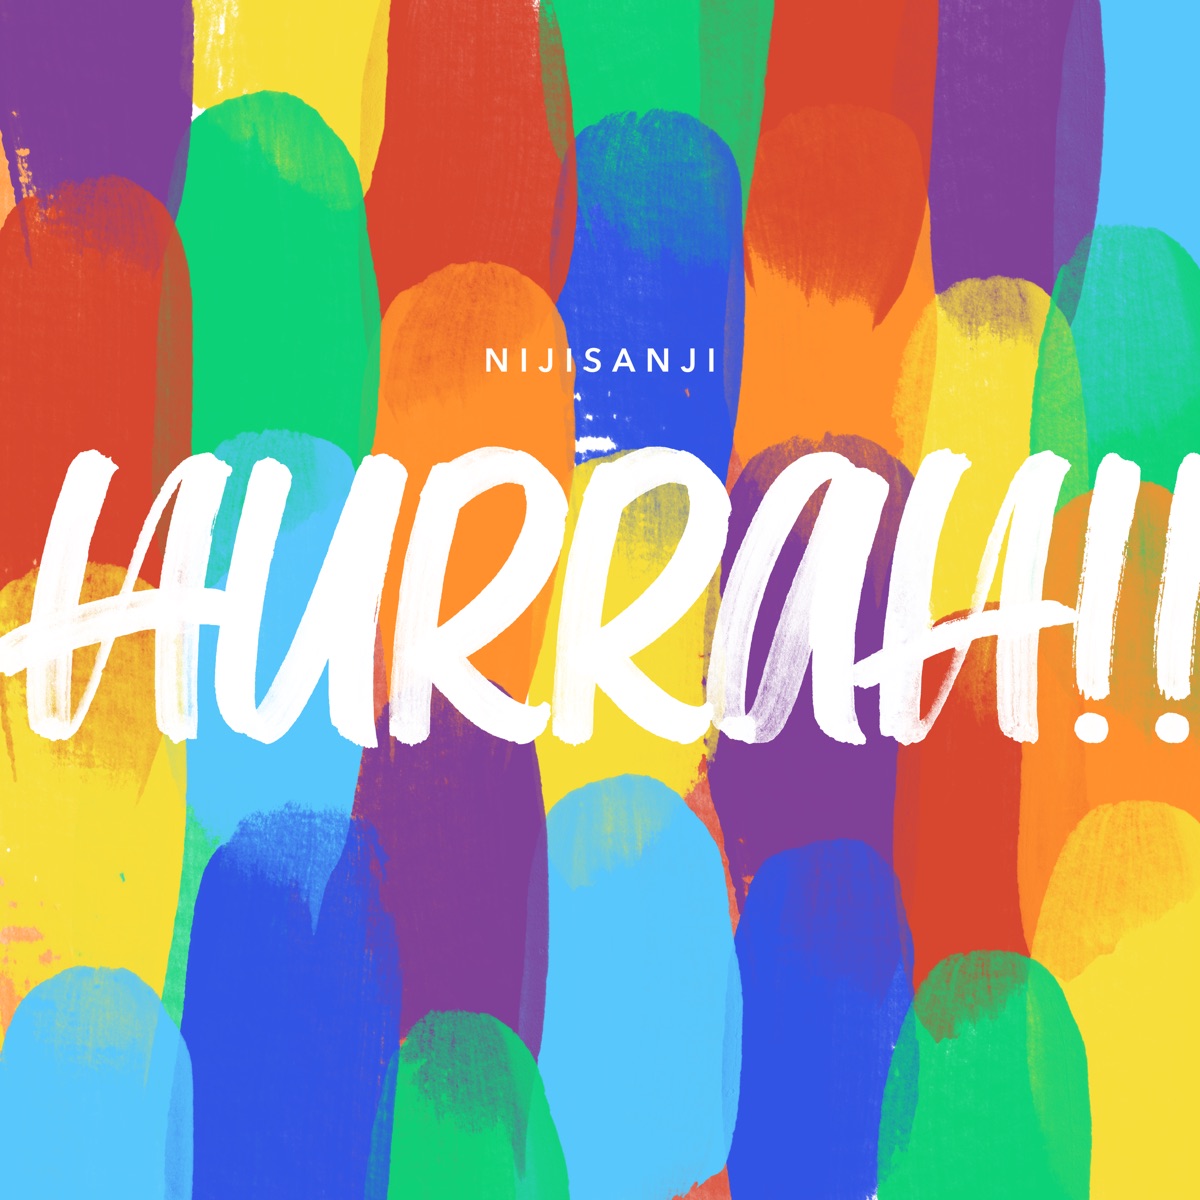 Cover art for『NIJISANJI - Hurrah!!』from the release『Hurrah!!